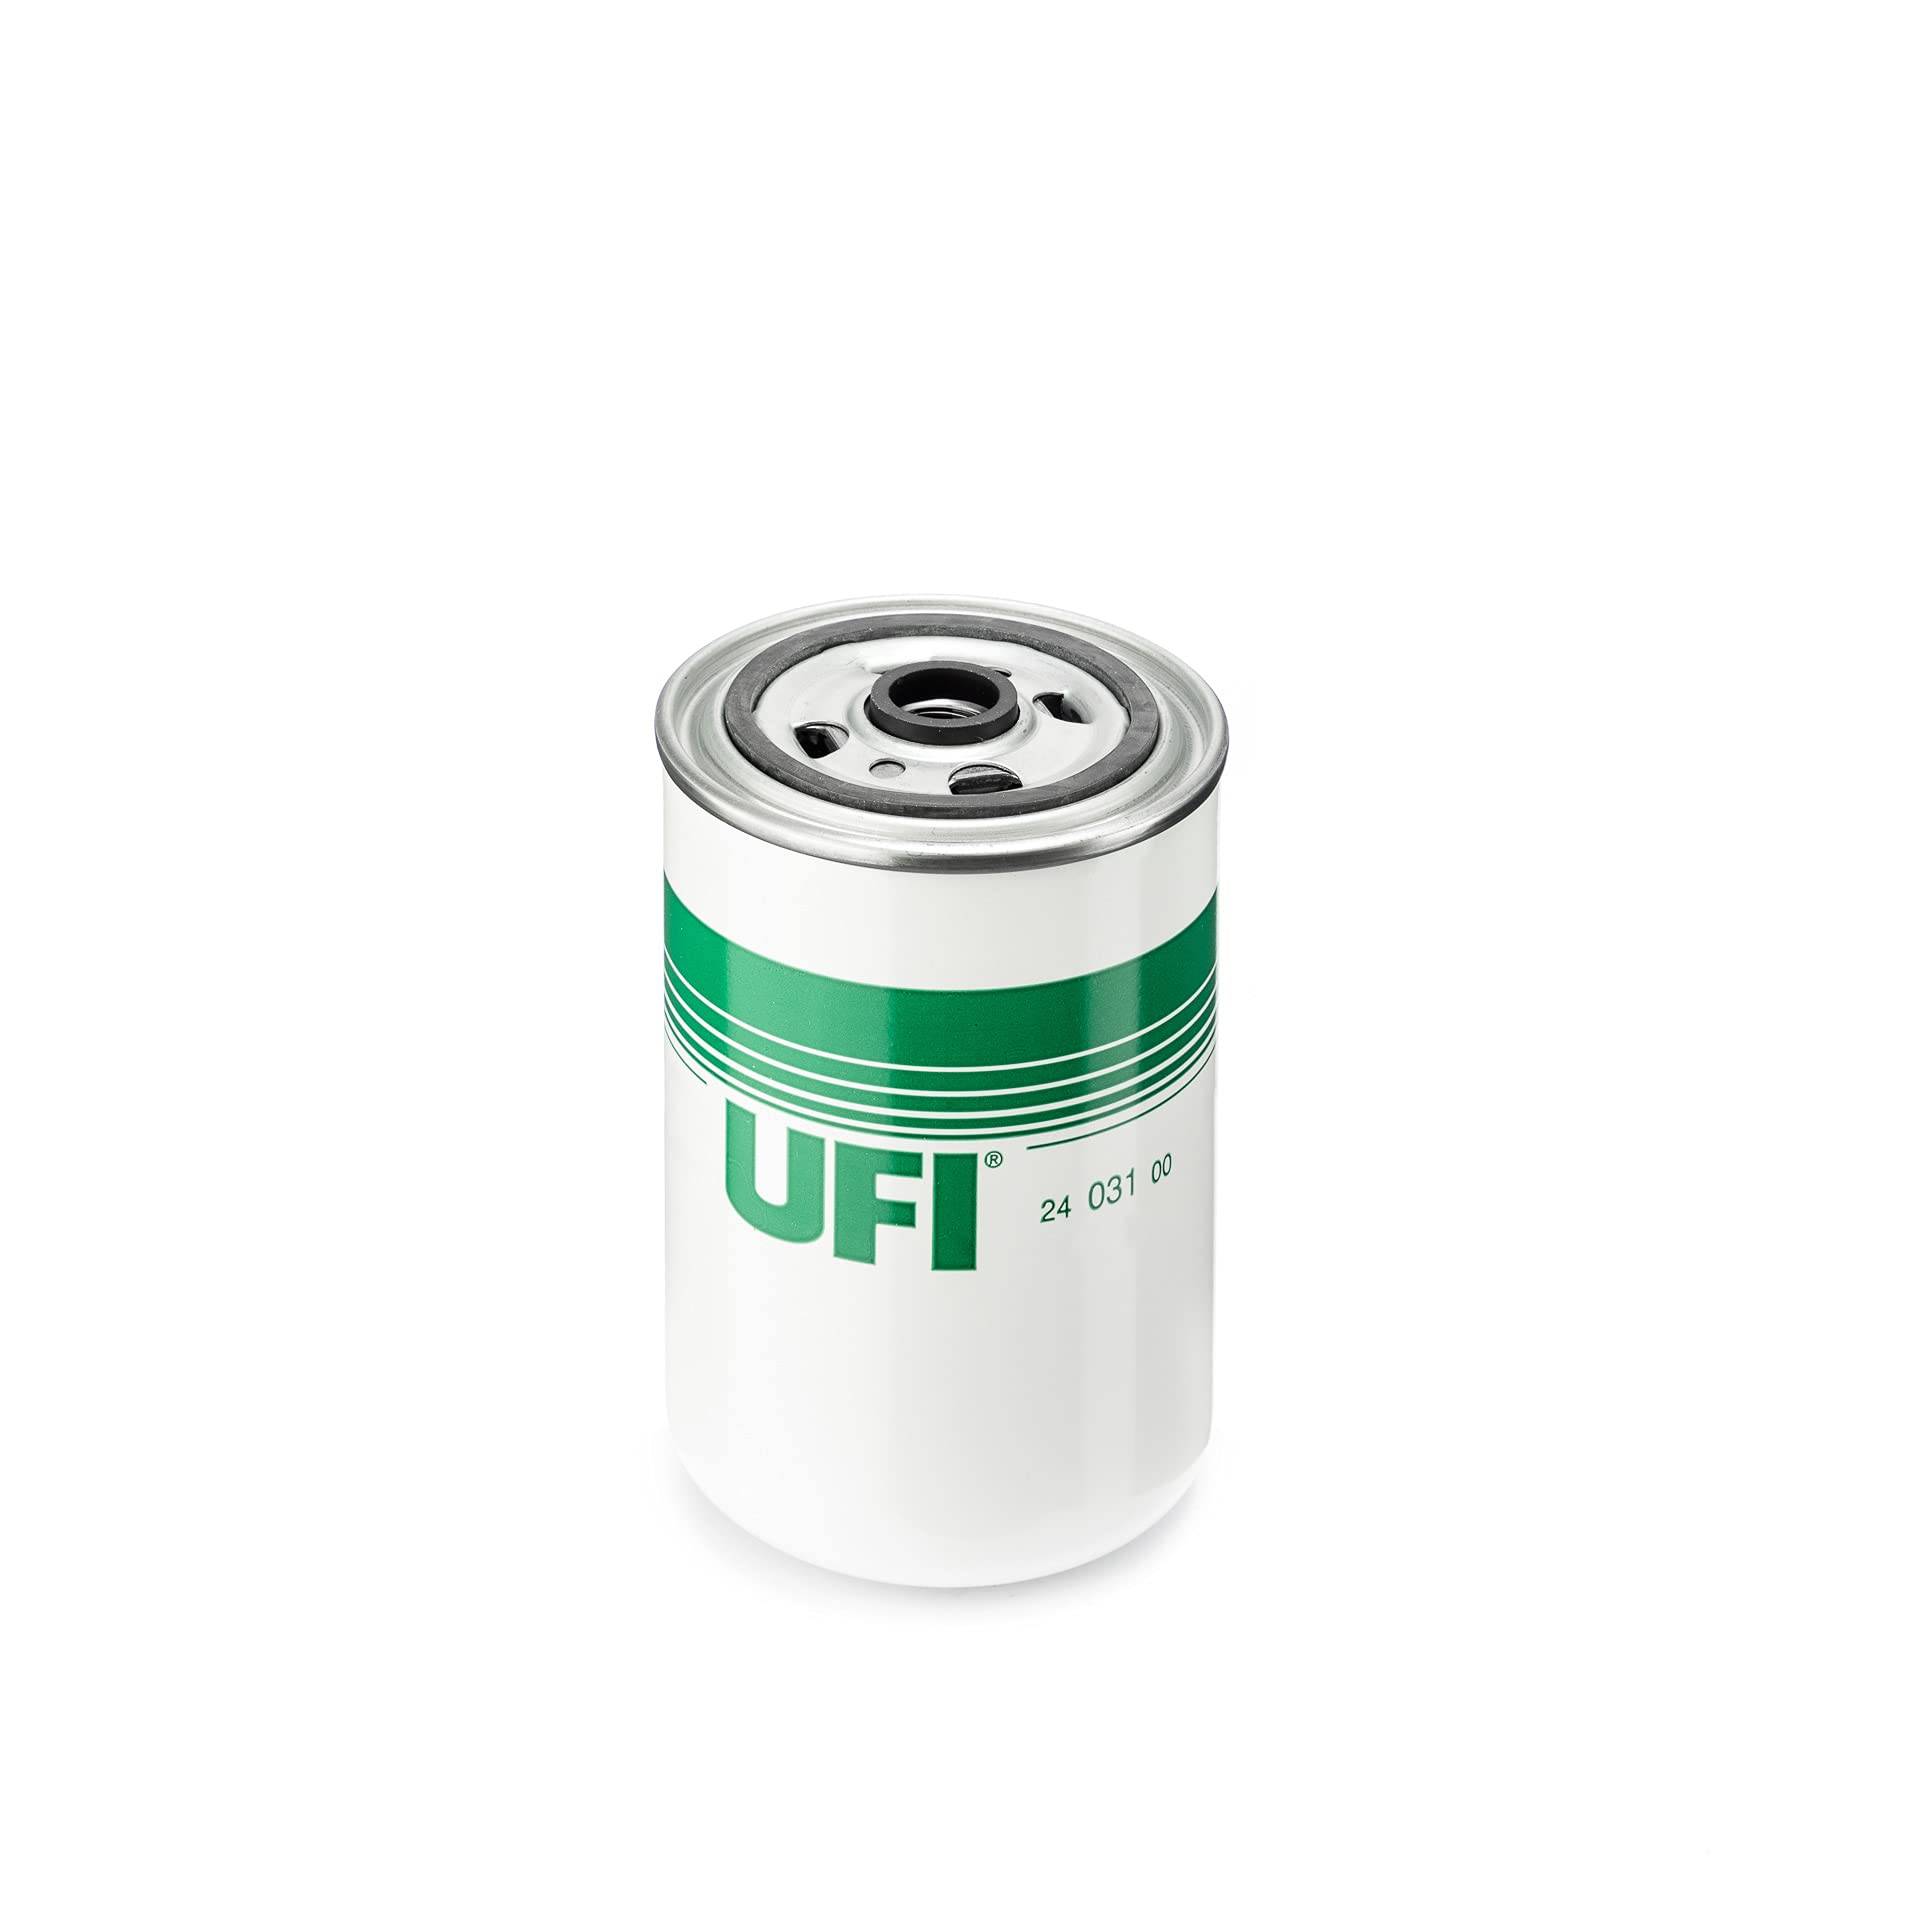 UFI 24.031.00 Kraftstofffilter, 95mm Durchmesser x 146.5mm Höhe von UFI